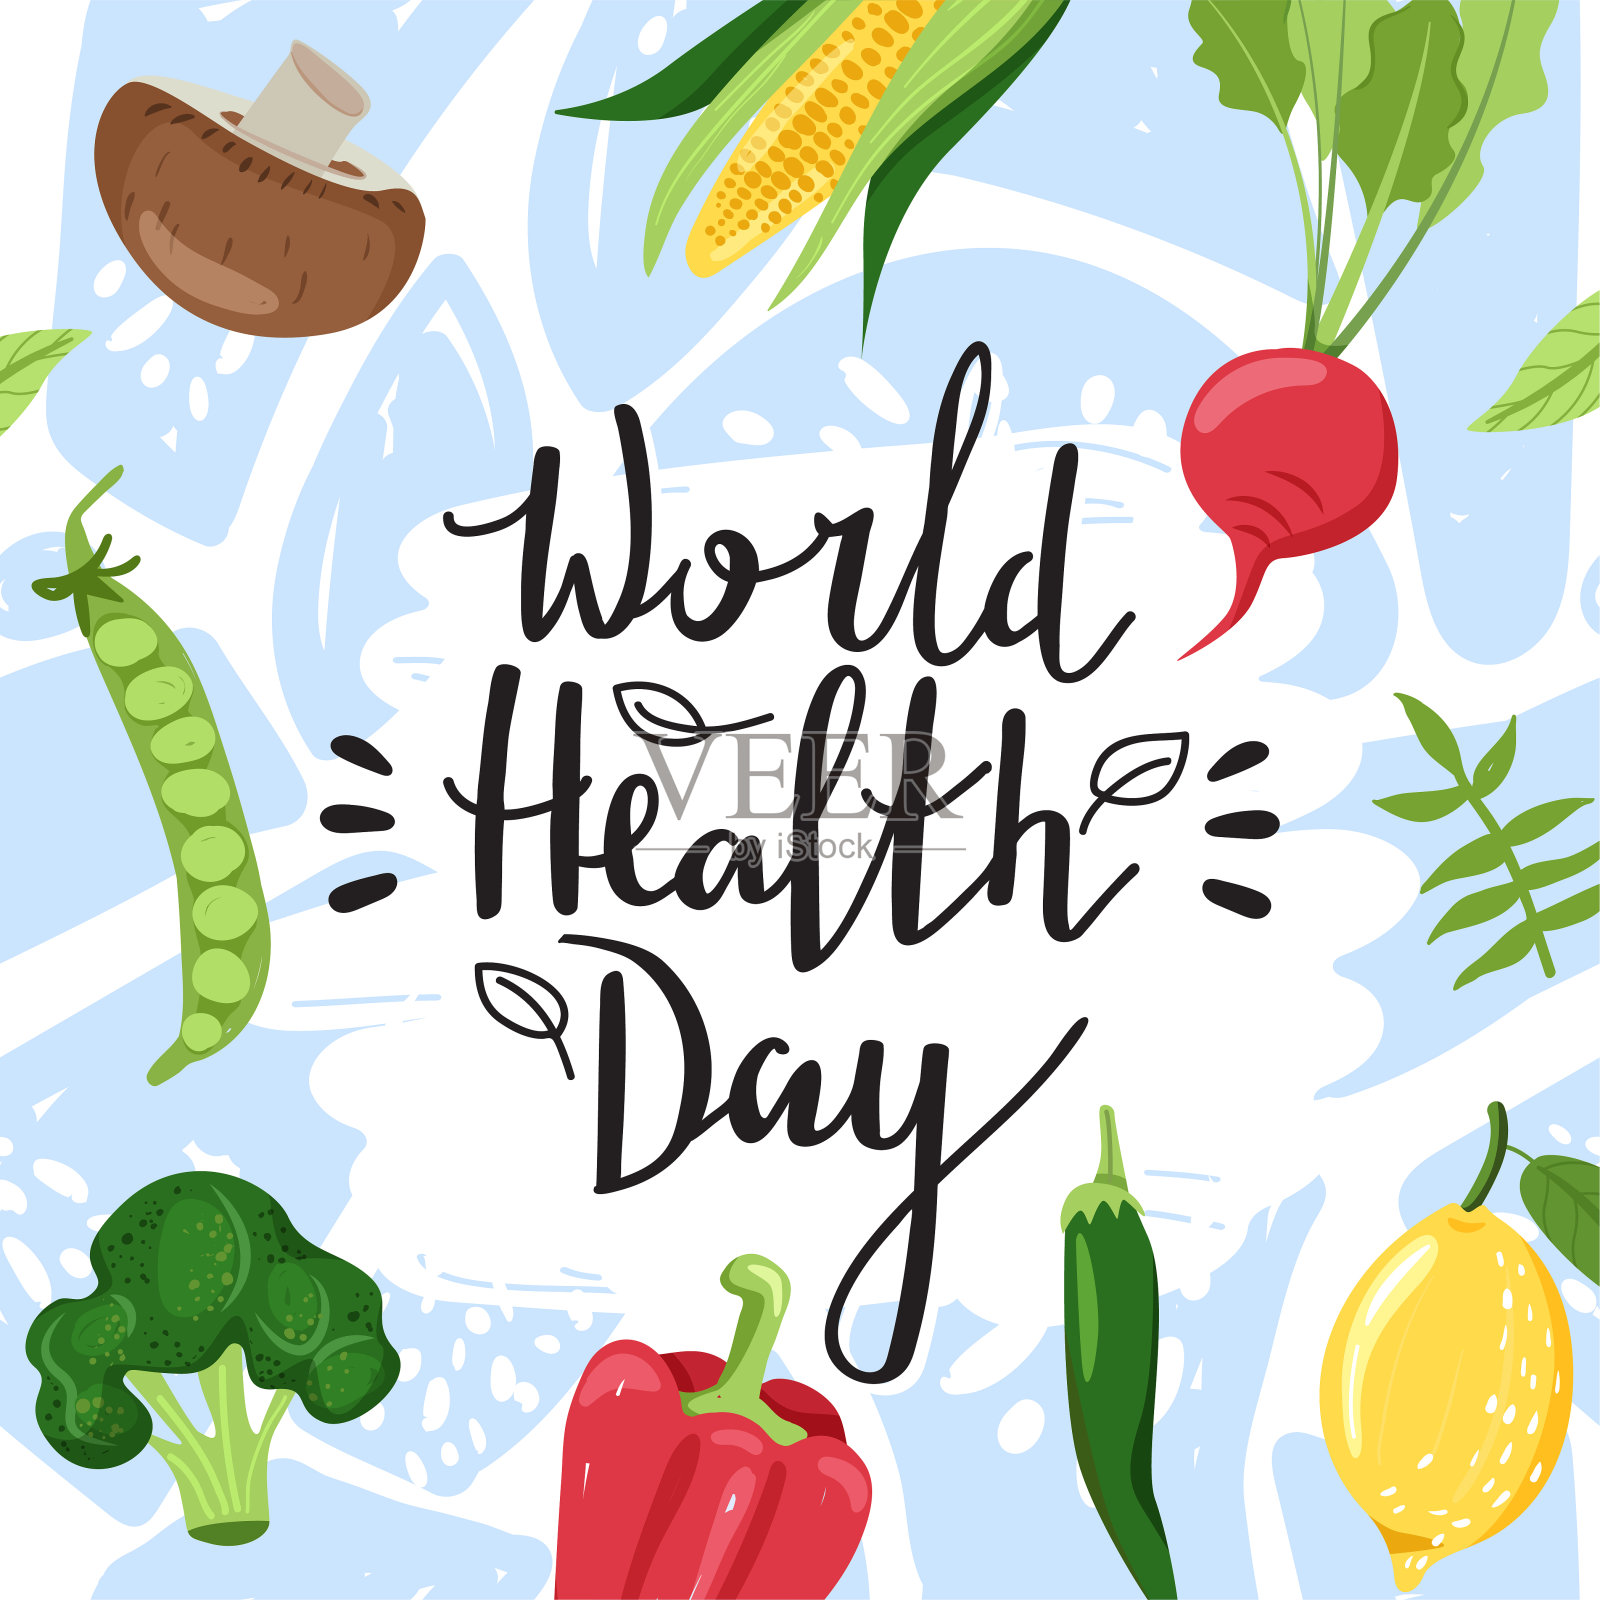 健康的生活理念。时尚的字体设计口号“世界卫生日”标志。插画图片素材